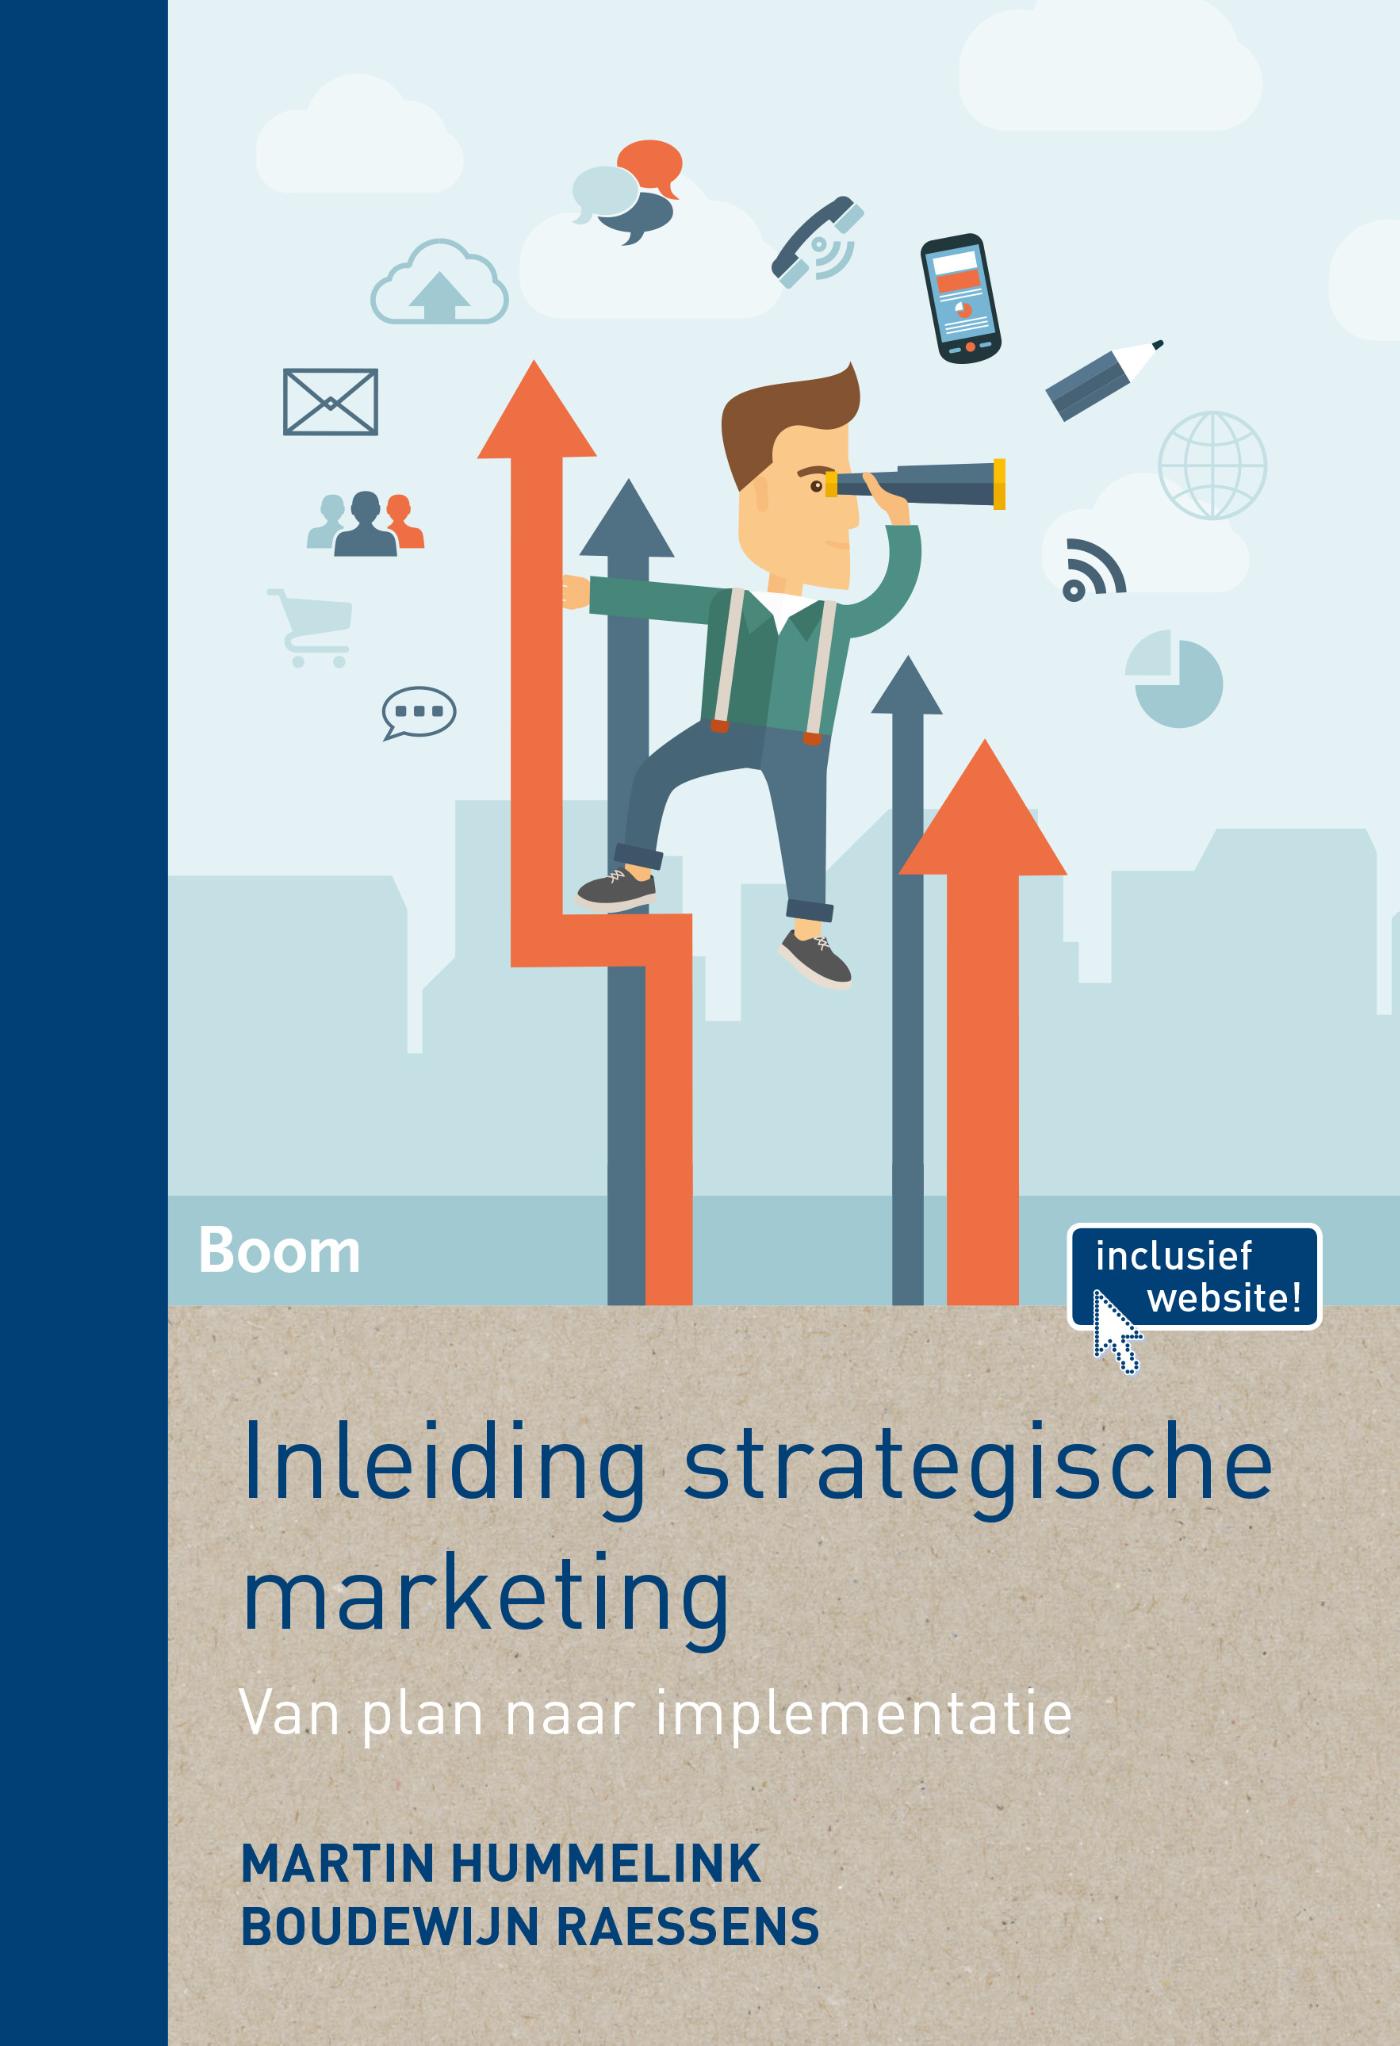 Inleiding strategische marketing (Ebook)